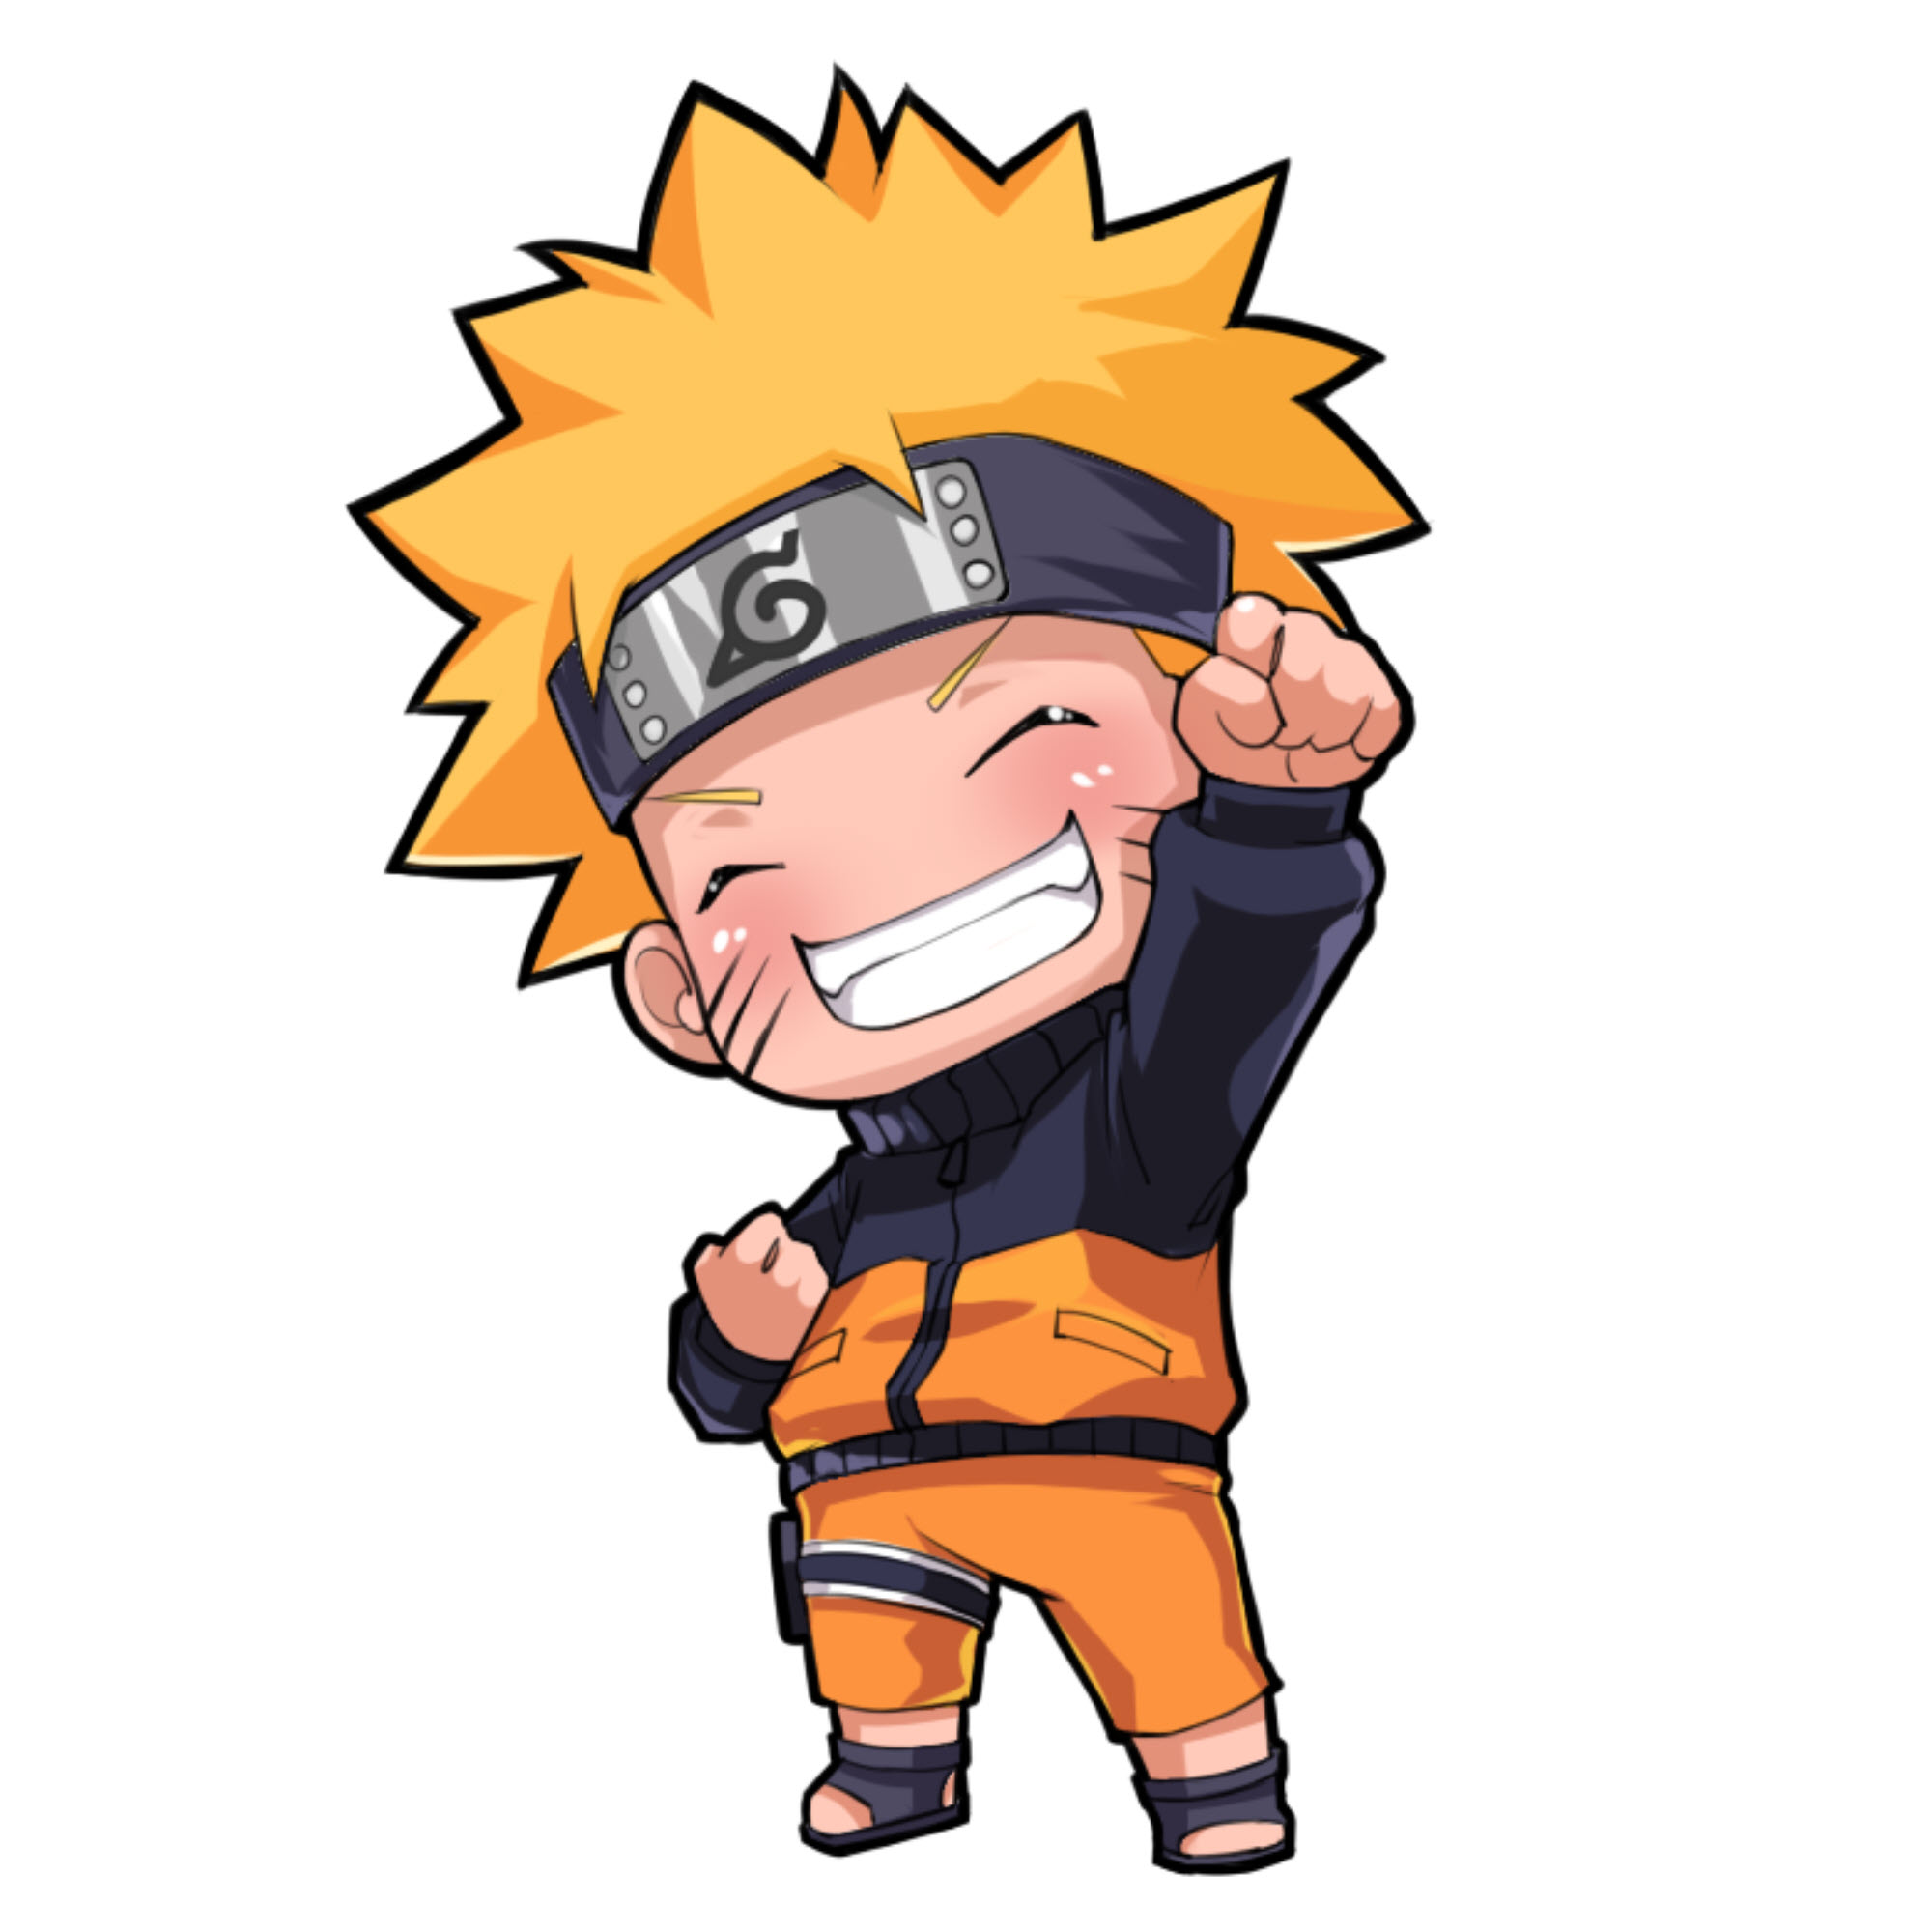 Naruto Cool Ngầu: Nếu bạn là một fan hâm mộ Naruto, thì hãy xem bức hình Naruto Cool Ngầu này. Với những chi tiết tuyệt vời và sự tôn trọng đến các nhân vật trong anime, bức hình này sẽ chắc chắn khiến bạn cảm thấy thích thú. Hãy xem ngay để khám phá những điều thú vị!